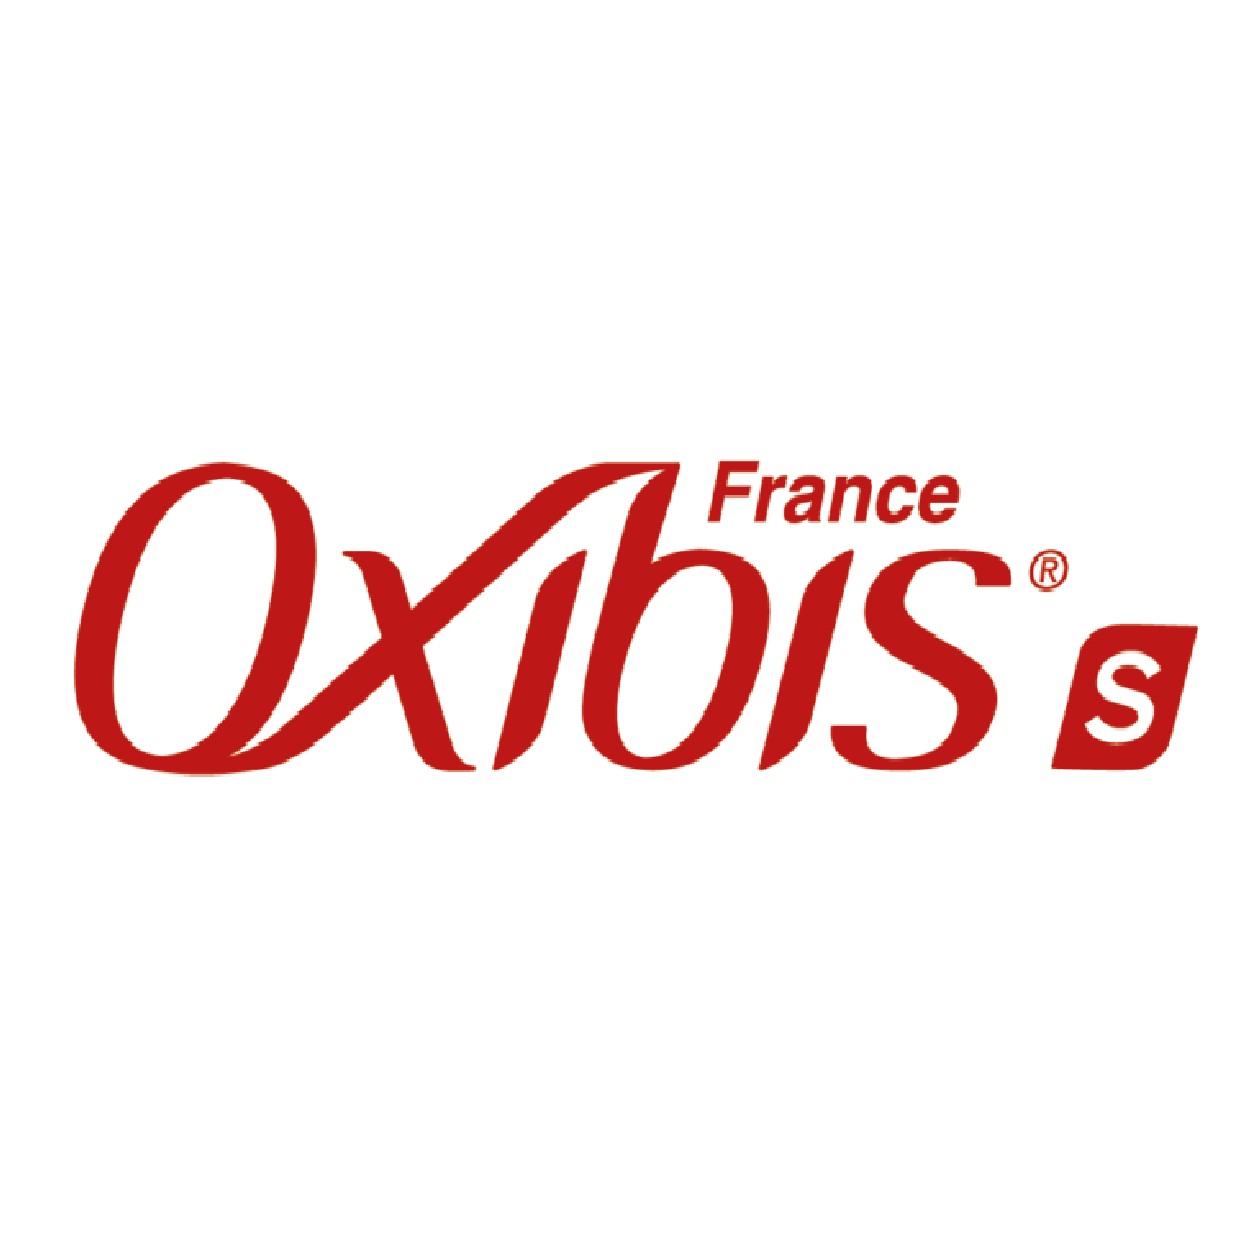 Oxibis